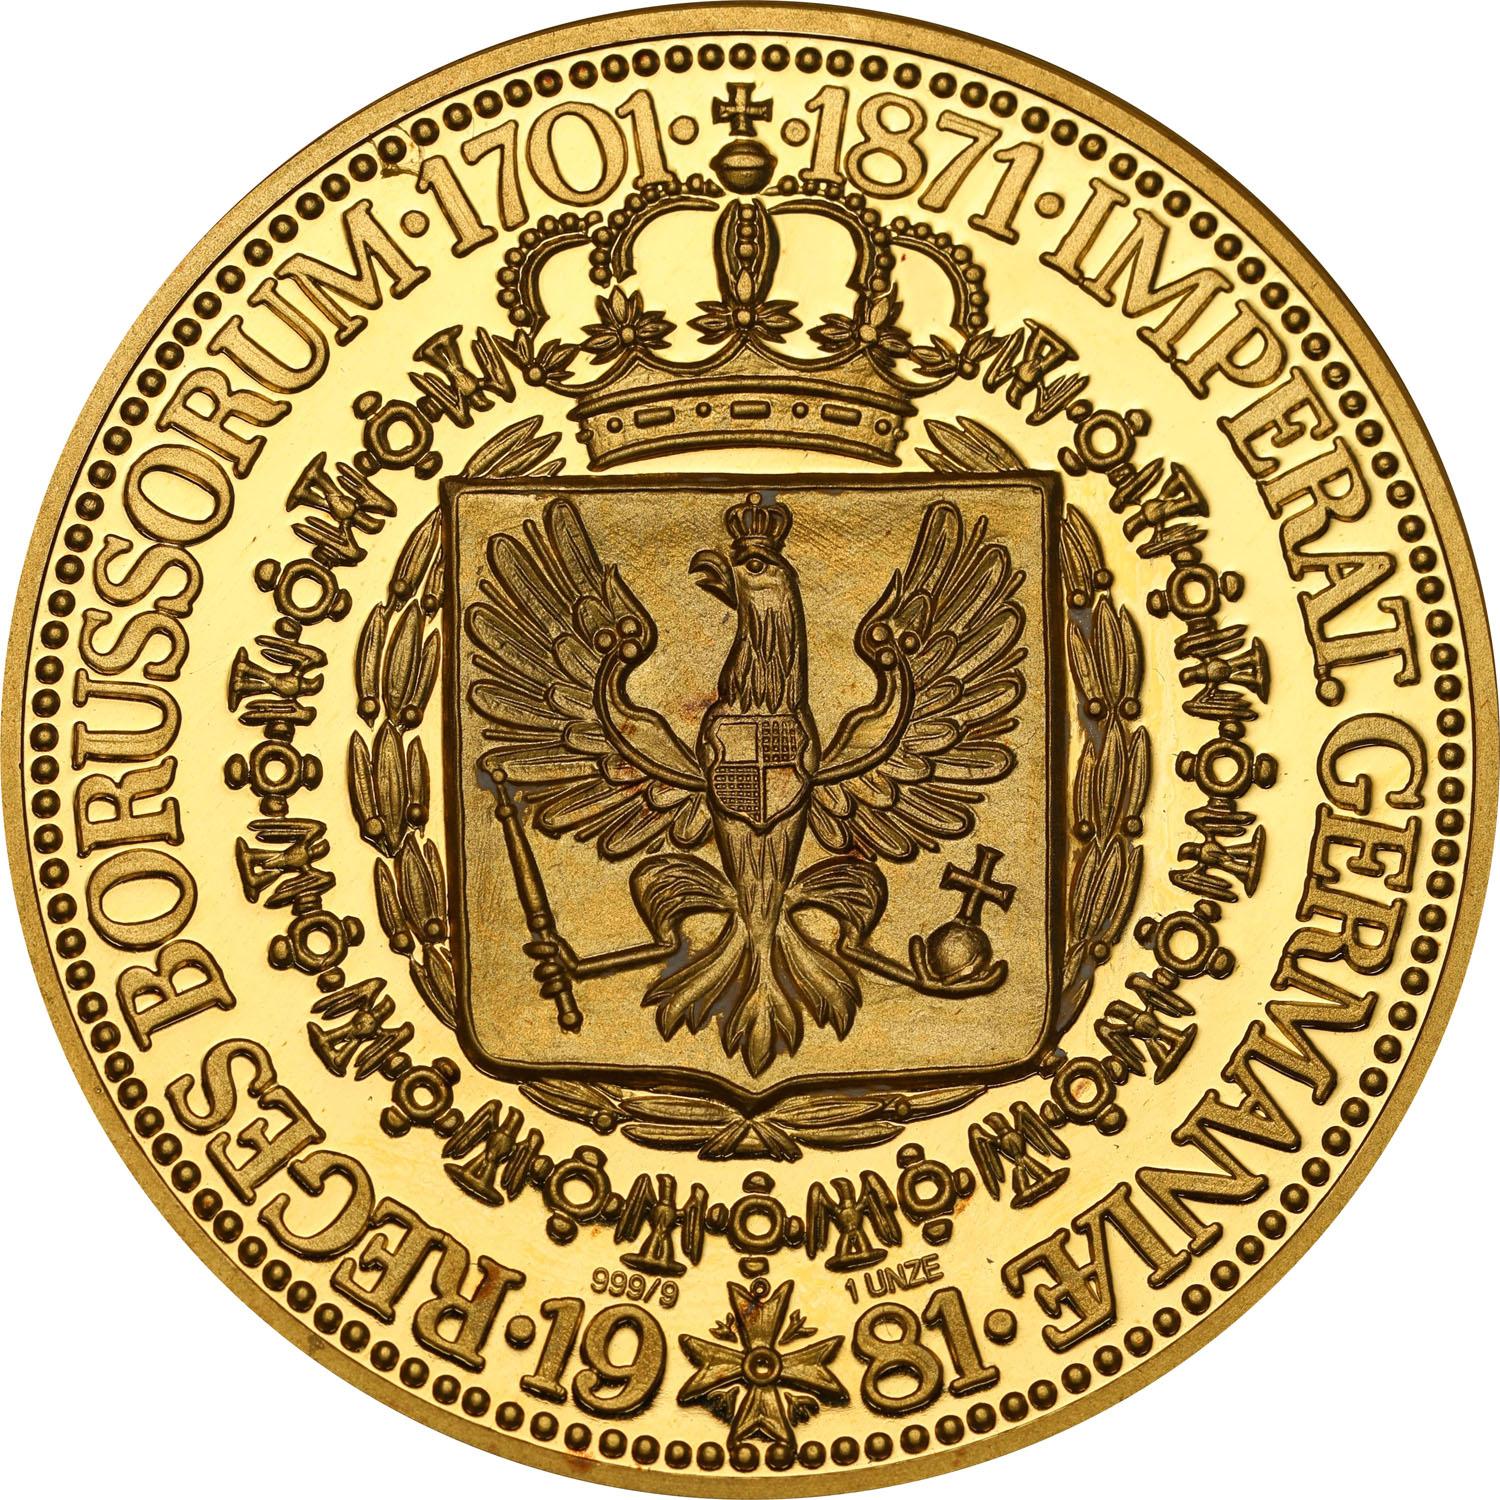 Niemcy. Medal pamiątkowy - panowanie królów pruskich w latach 1701-1871 RZADKOŚĆ - Uncja ZŁOTA